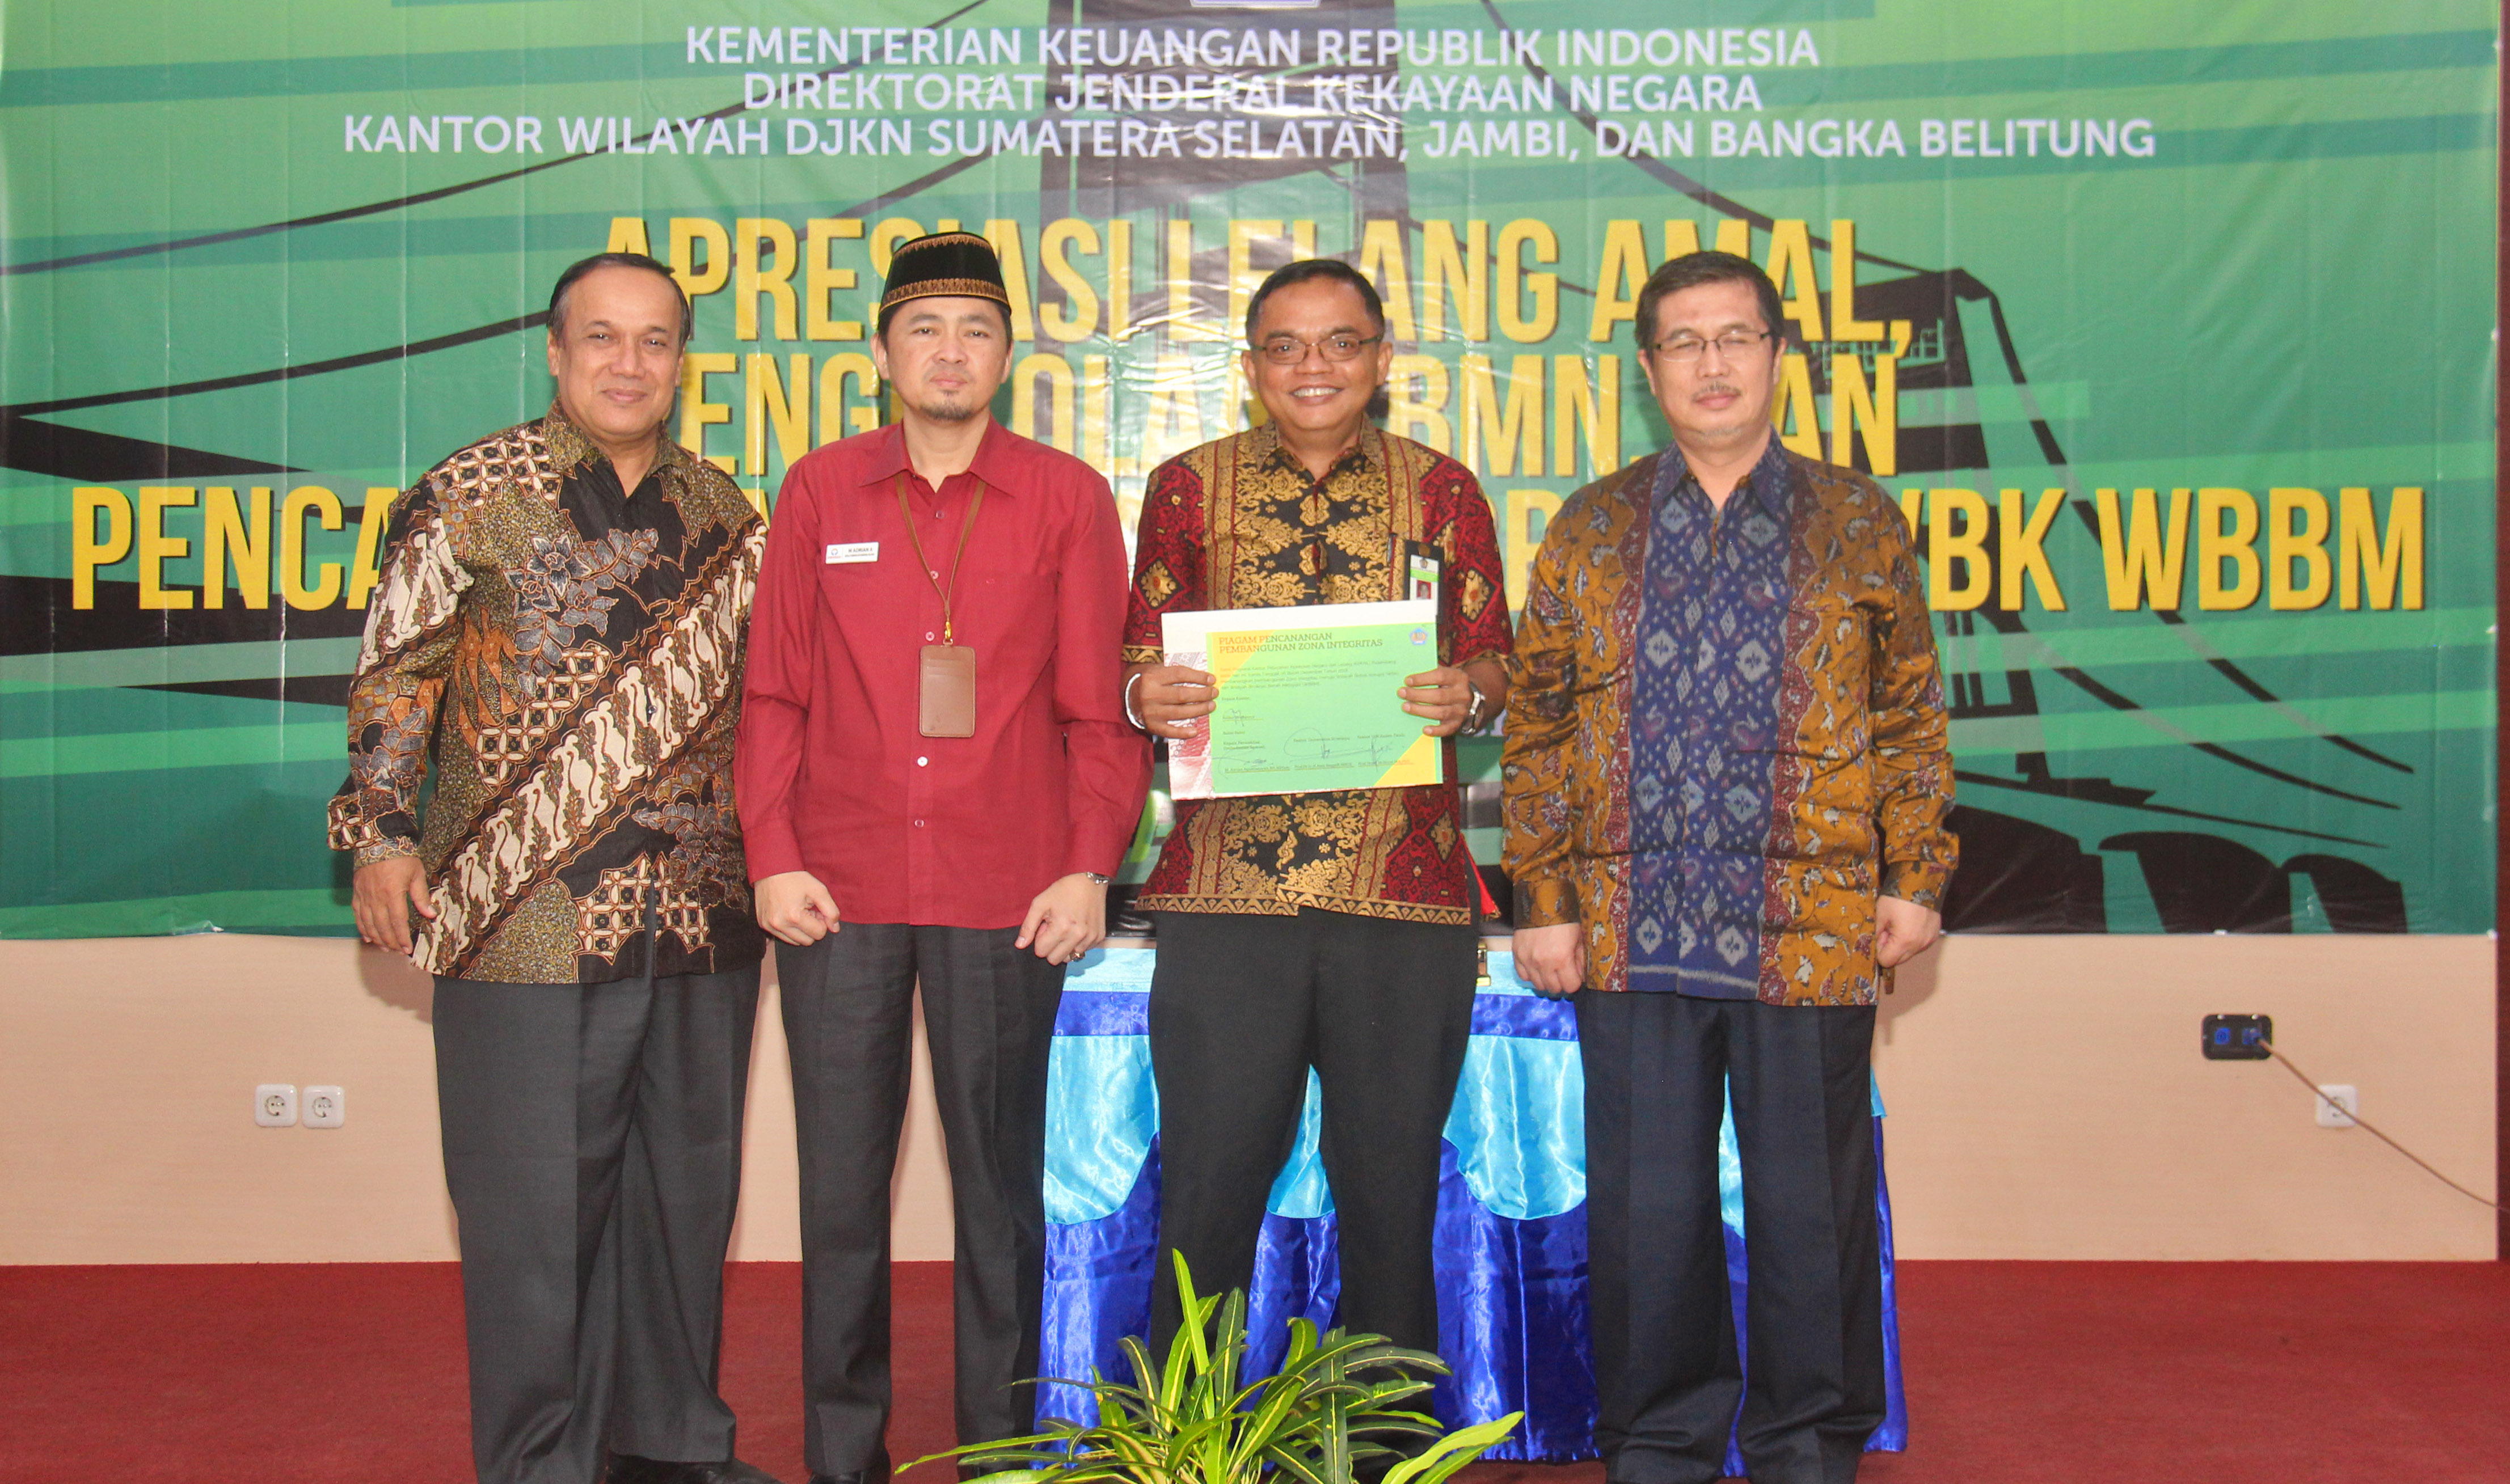 KPKNL Palembang Siap Mewujudkan Zona Integritas menuju WBK-WBBM